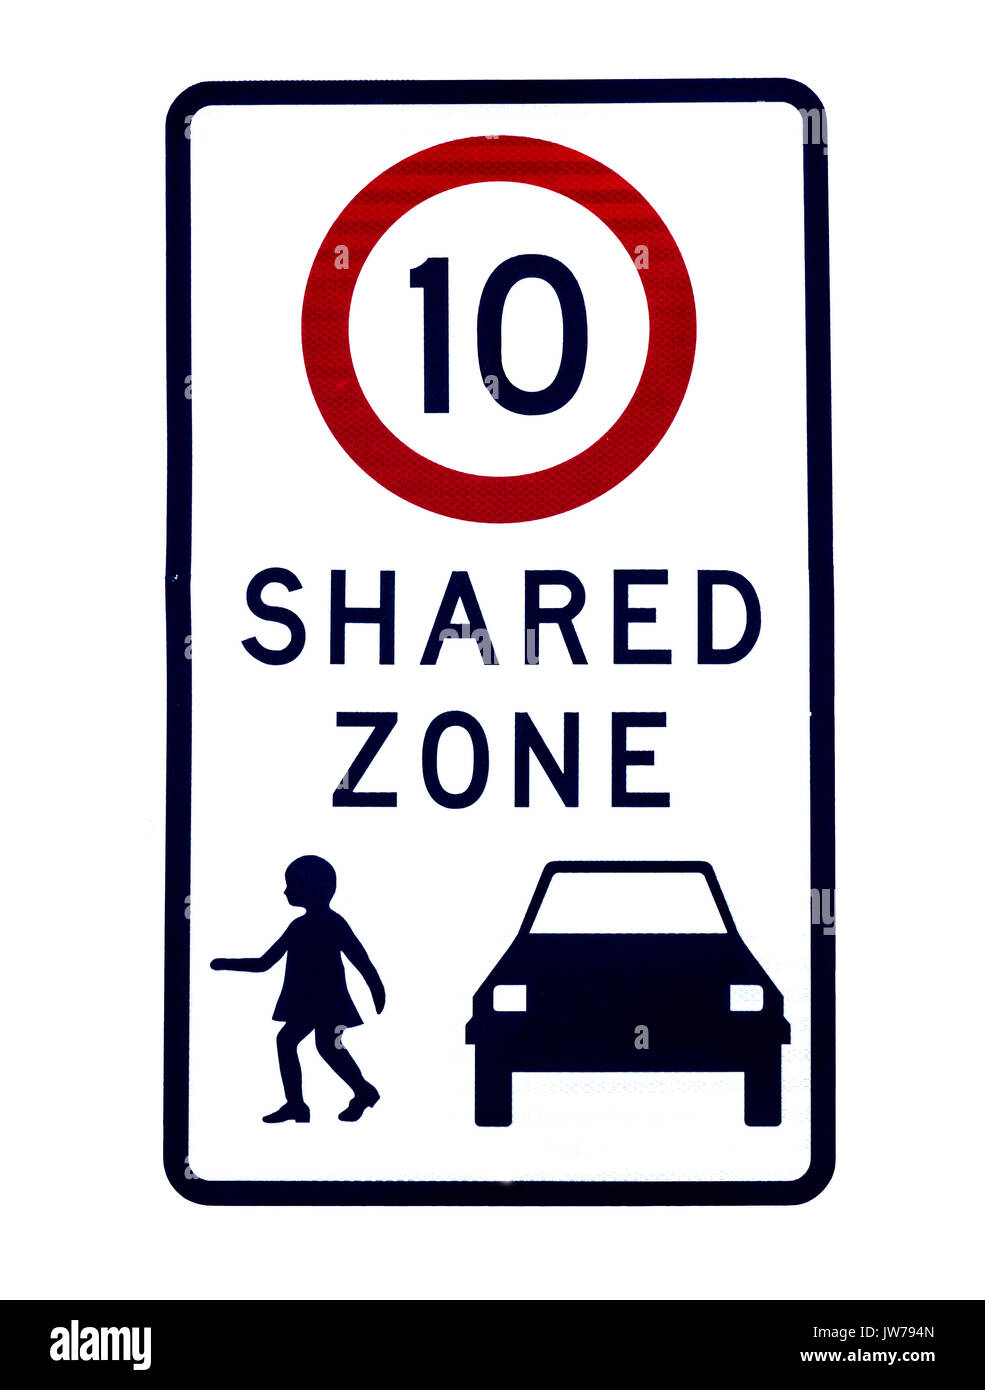 Strada segno di avvertimento - zona condivisa del limite di velocità Foto Stock